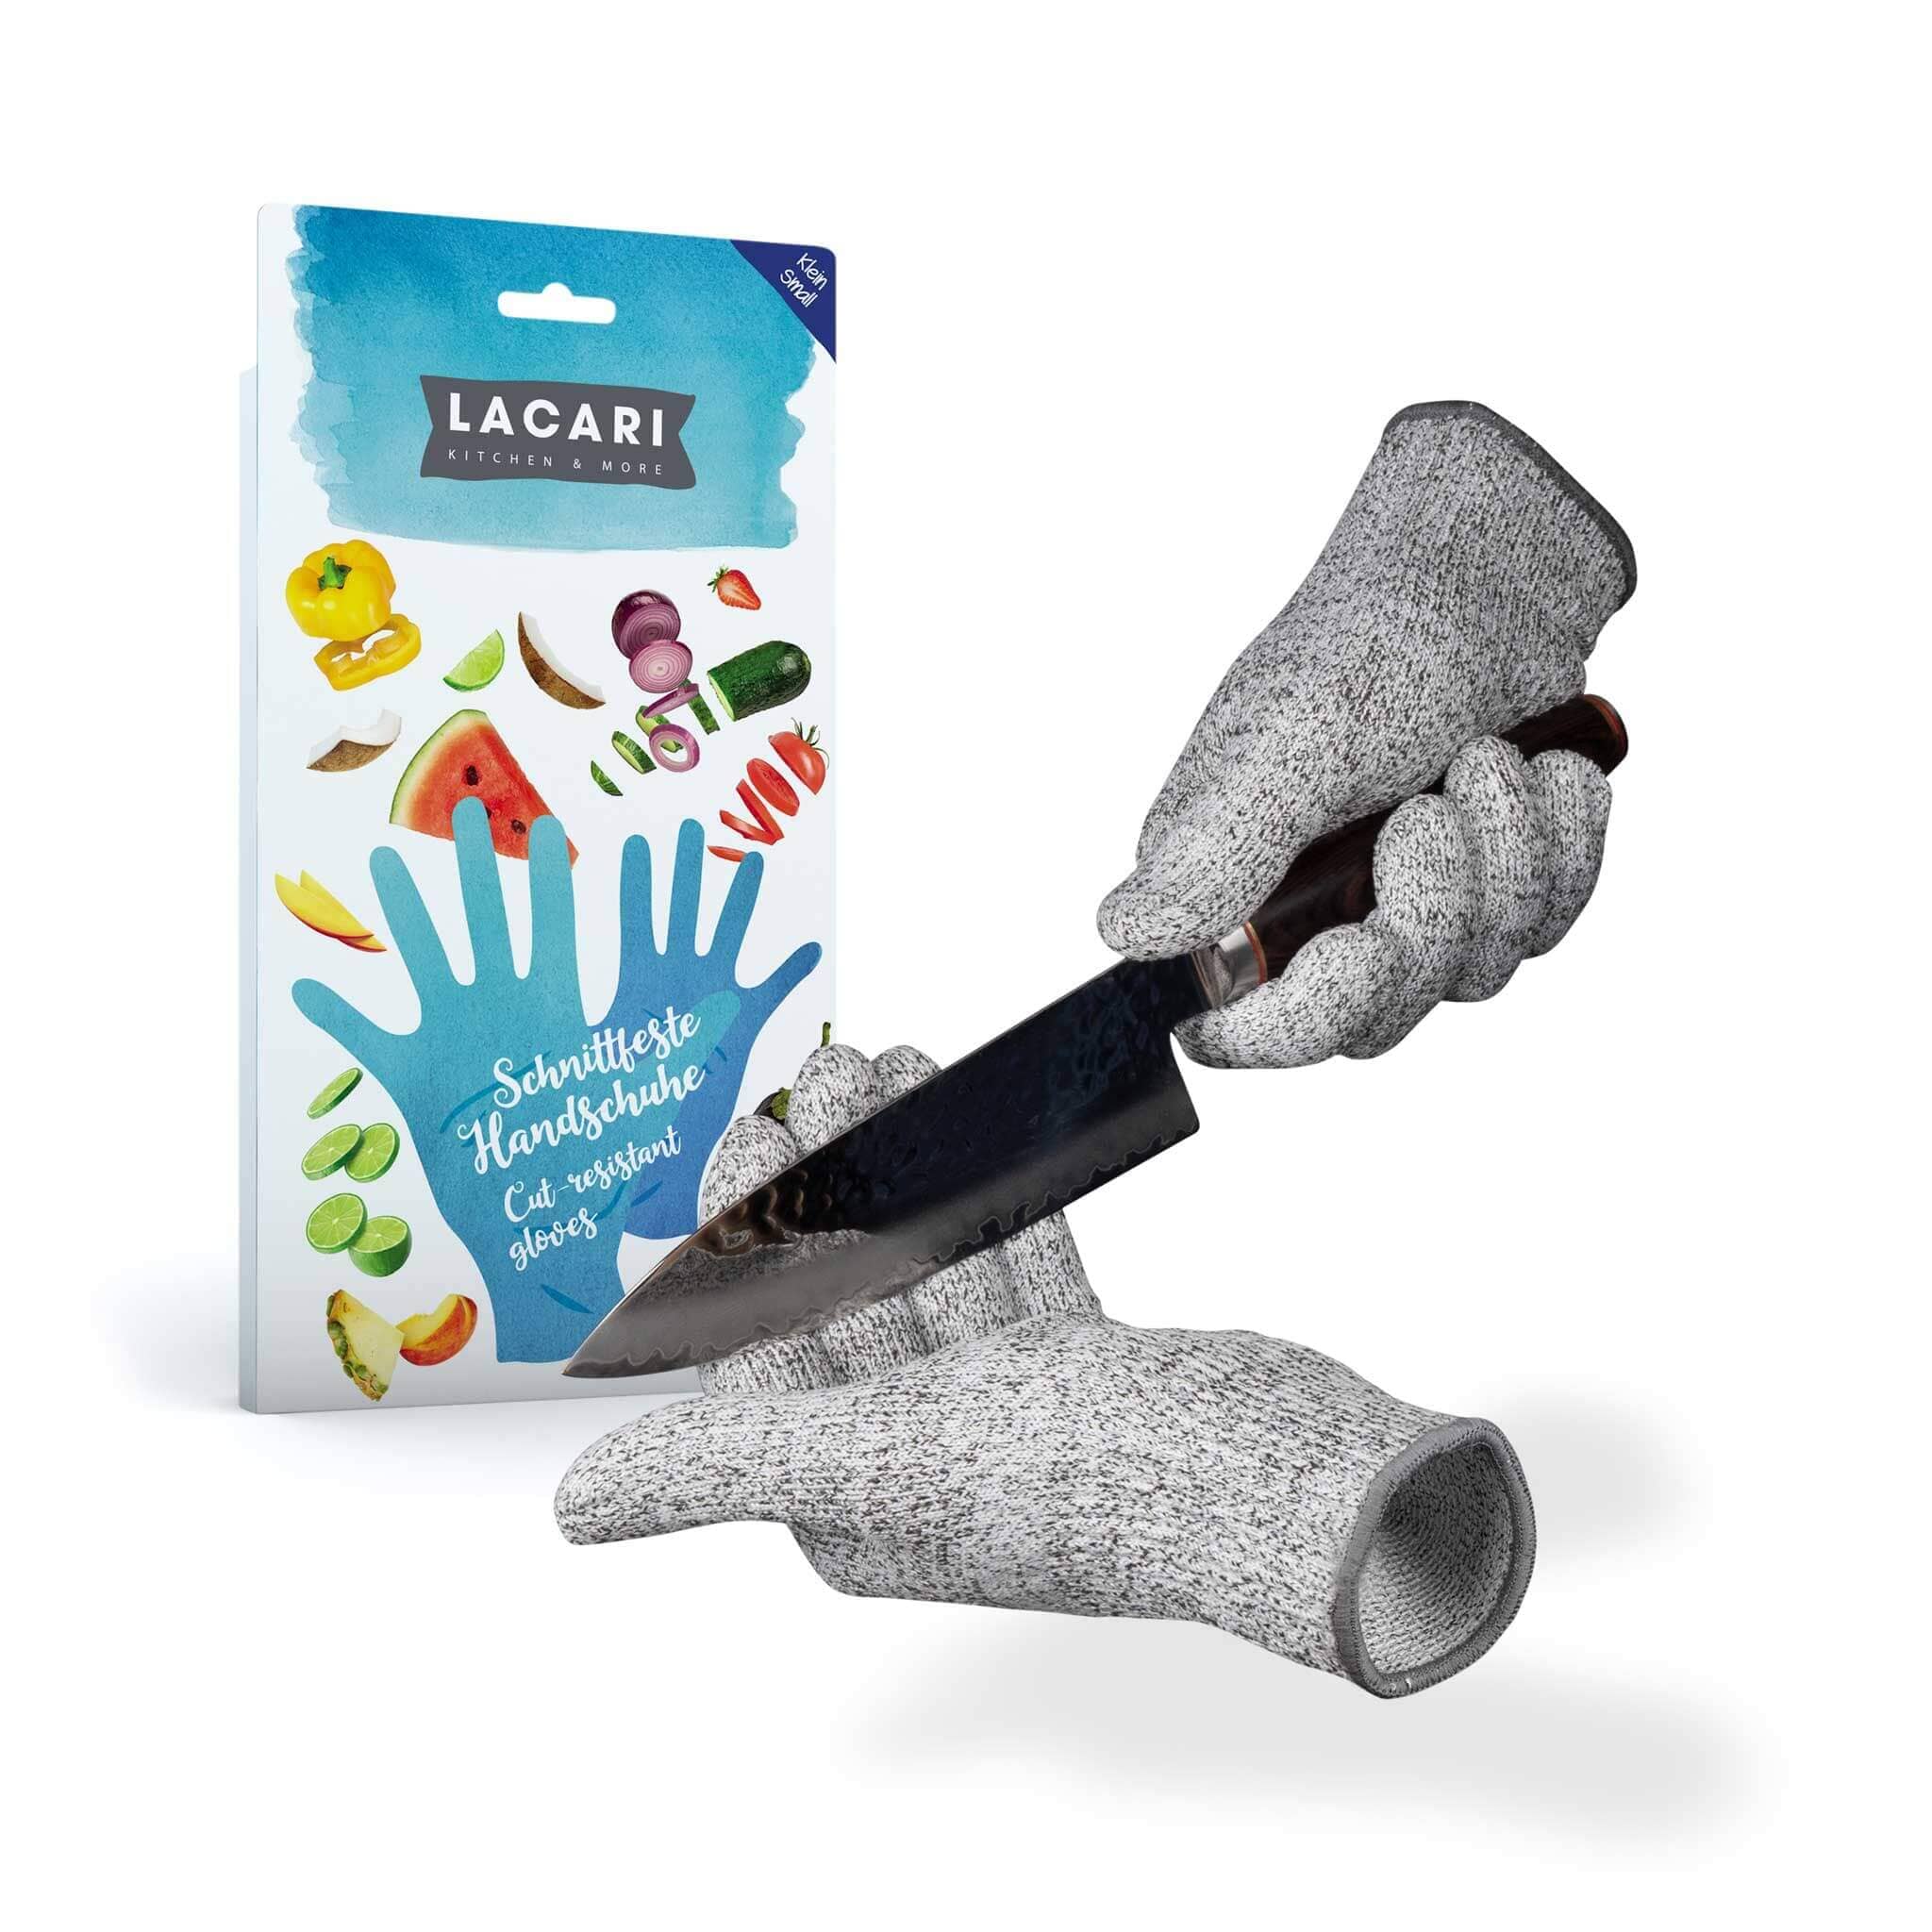 LACARI Schnittschutz-Handschuhe [1 Paar] - reißfest Küchenhandschuhe Lacari Grau S/M = 7 - 8.5 cm 